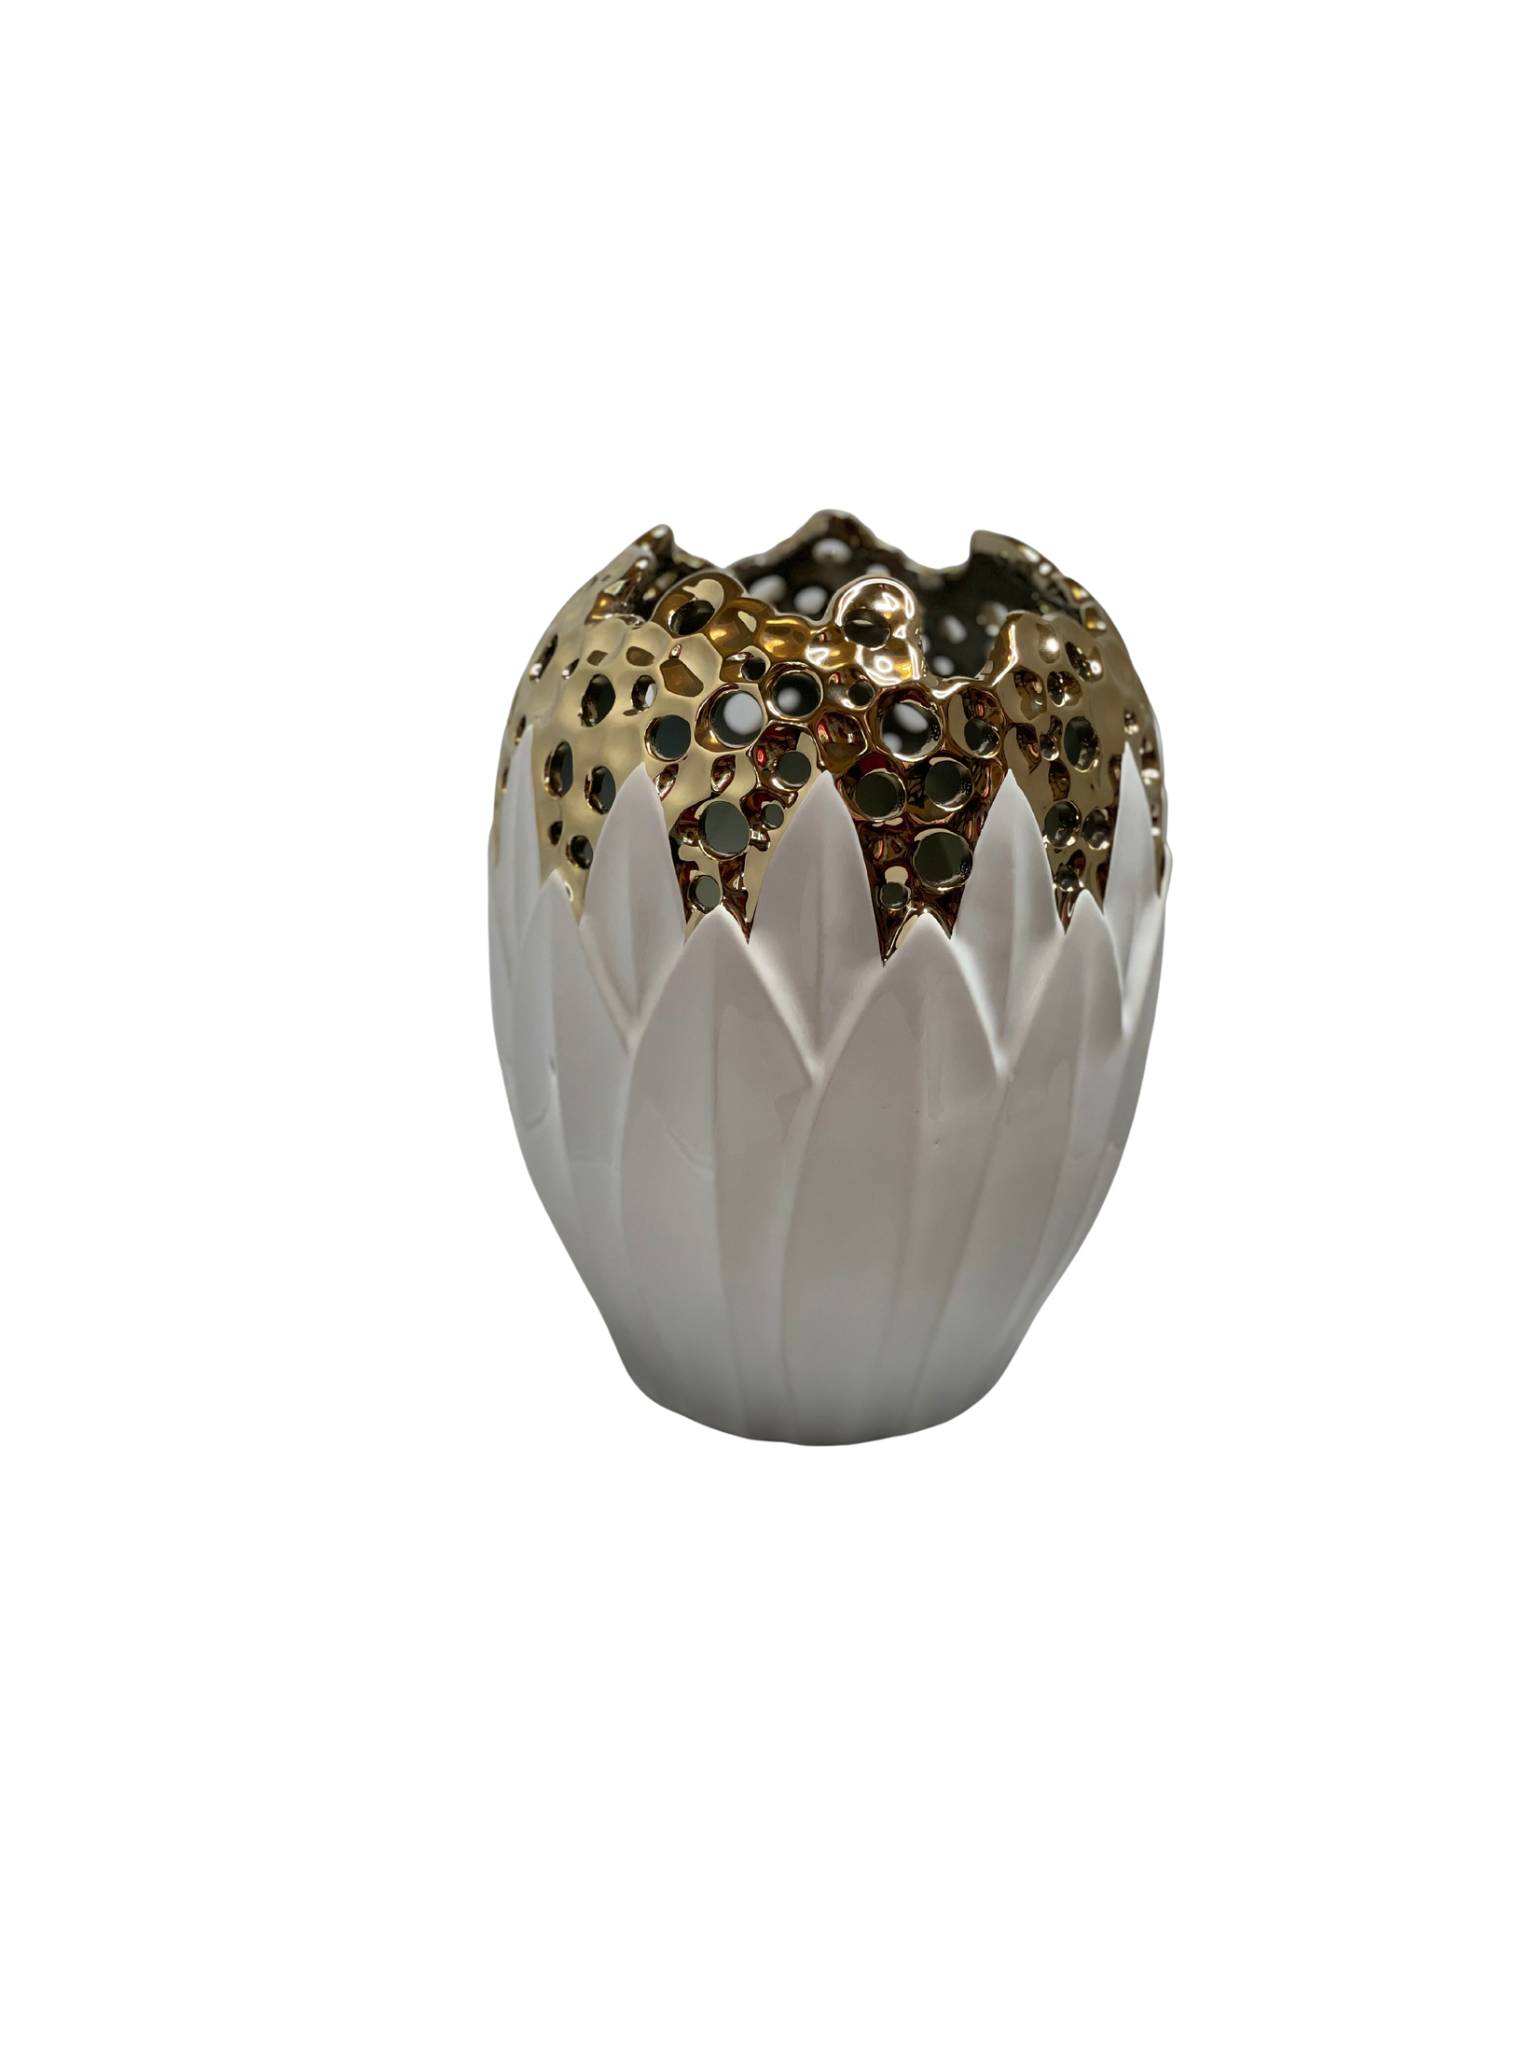 Luxury White and Gold Porcelain Vase